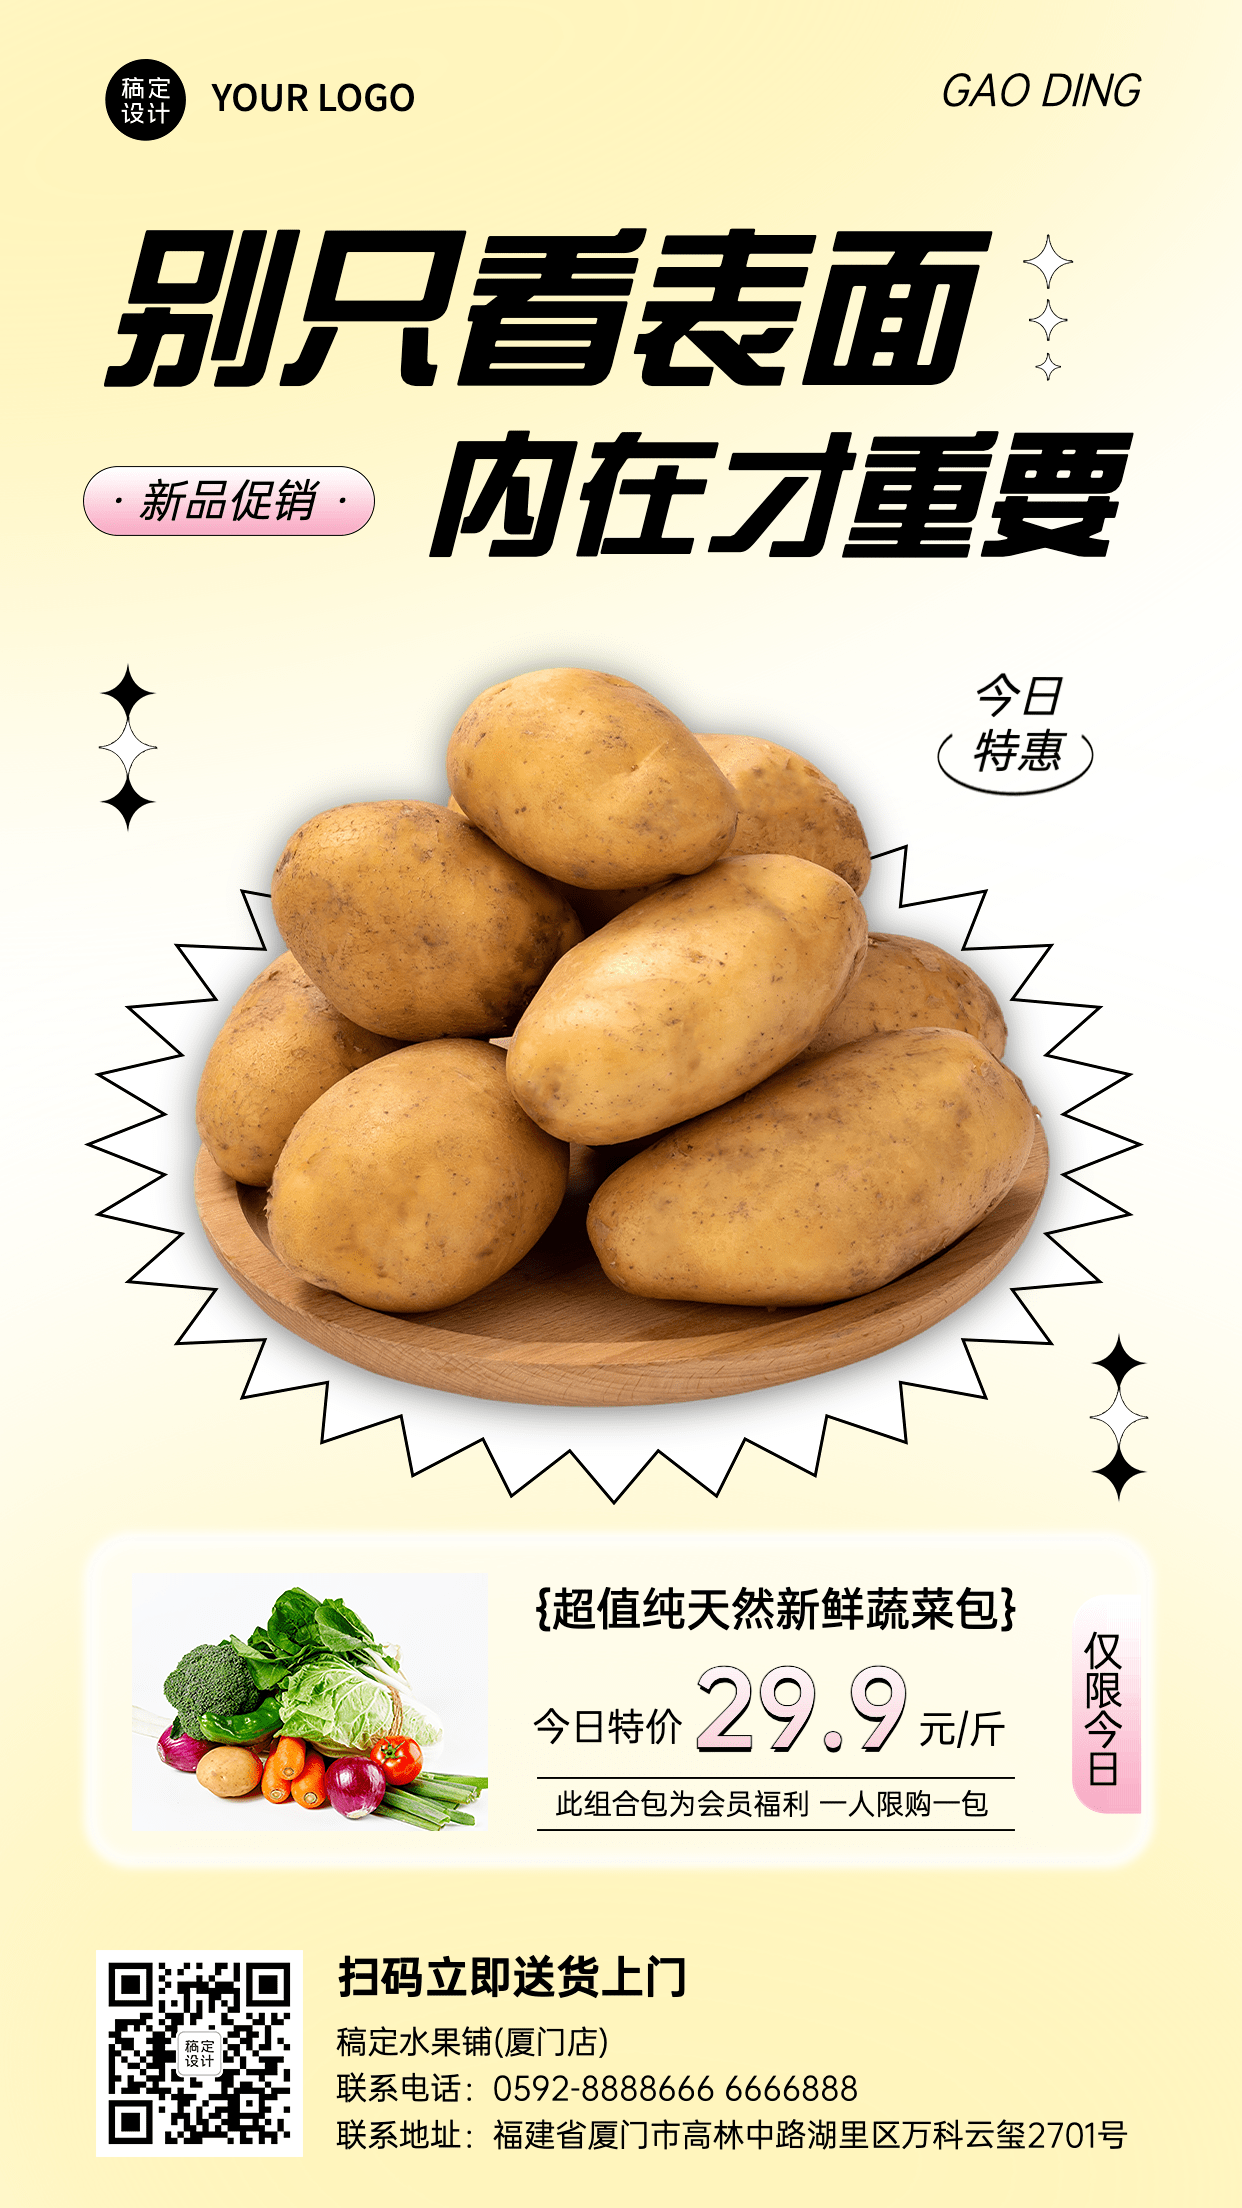 弥散风餐饮蔬菜土豆产品展示营销活动手机海报预览效果